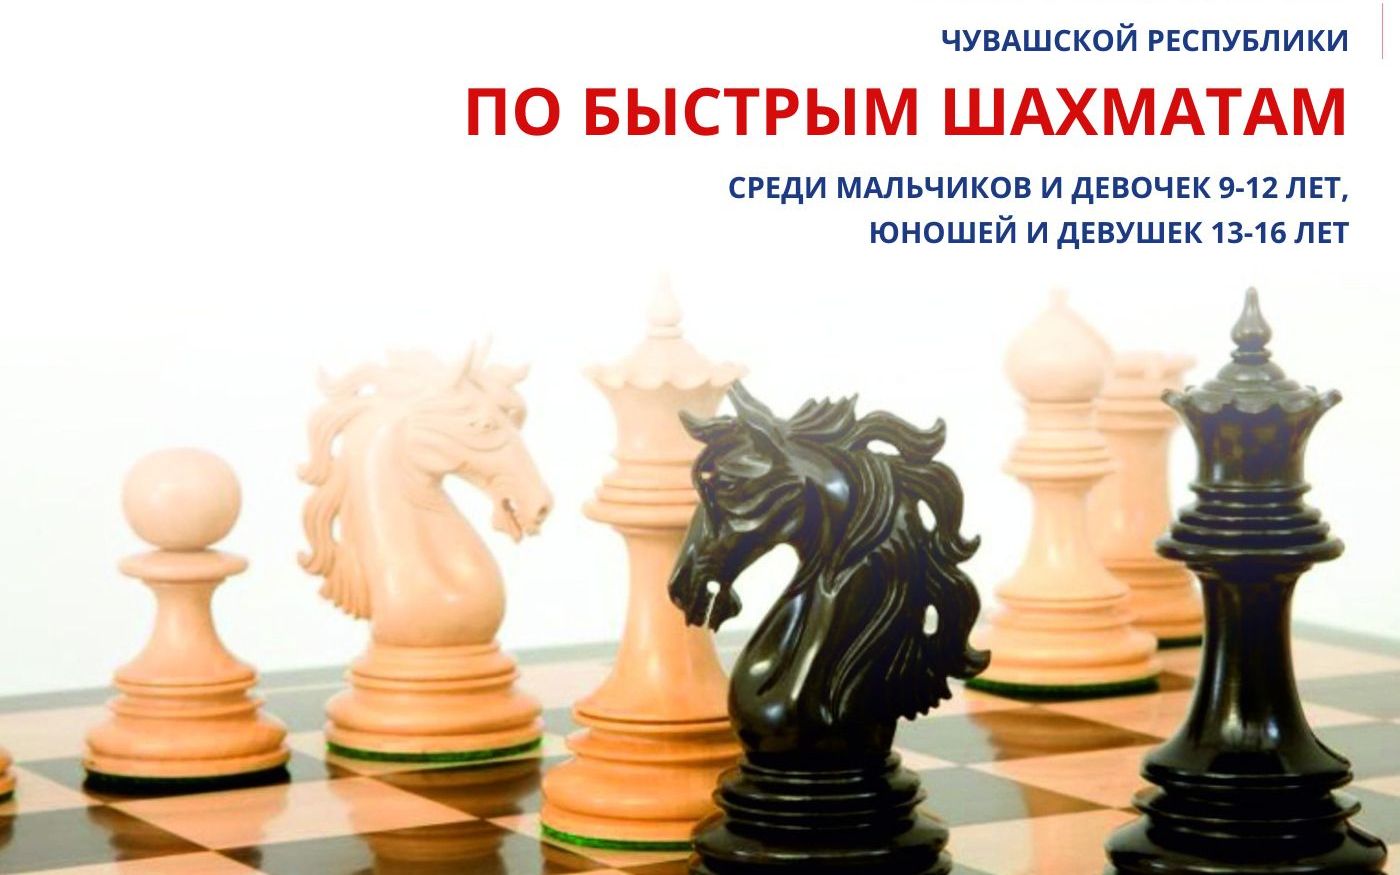 Приглашает к участию в Первенстве Чувашской Республики по быстрым шахматам